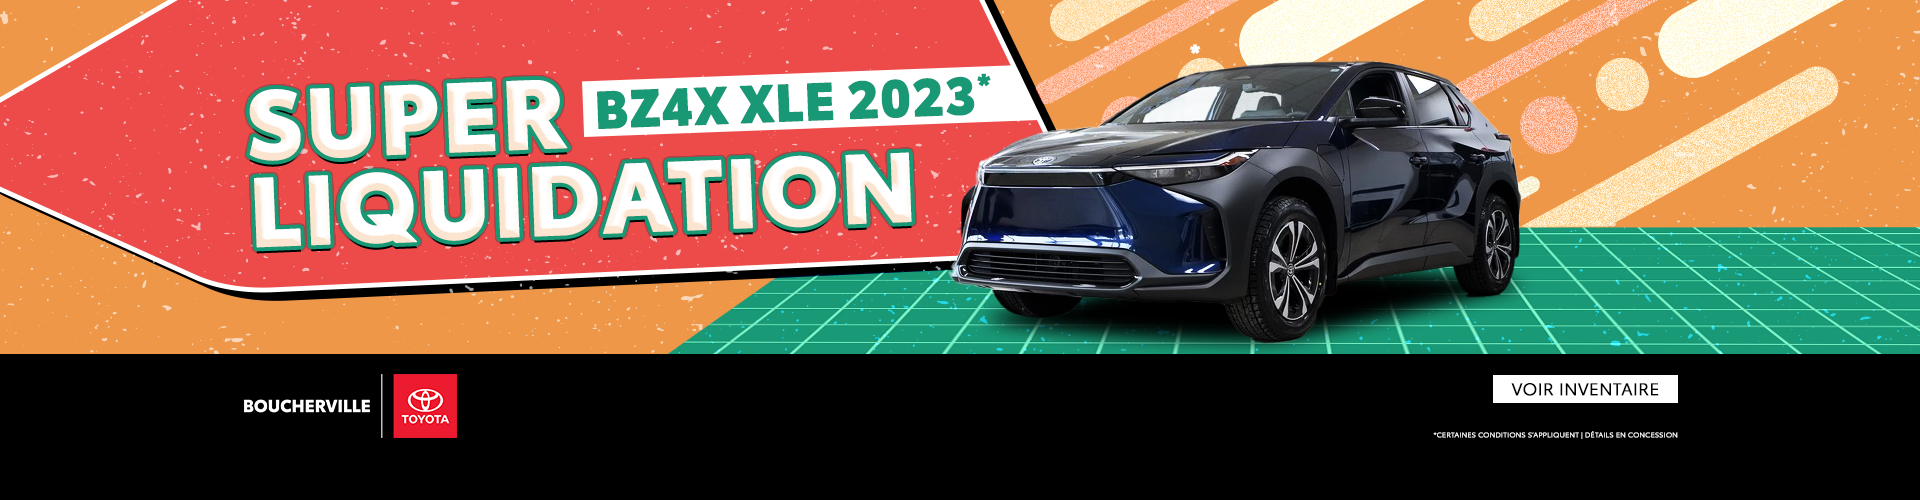 SUPER LIQUIDATION BZ4X XLE 2023